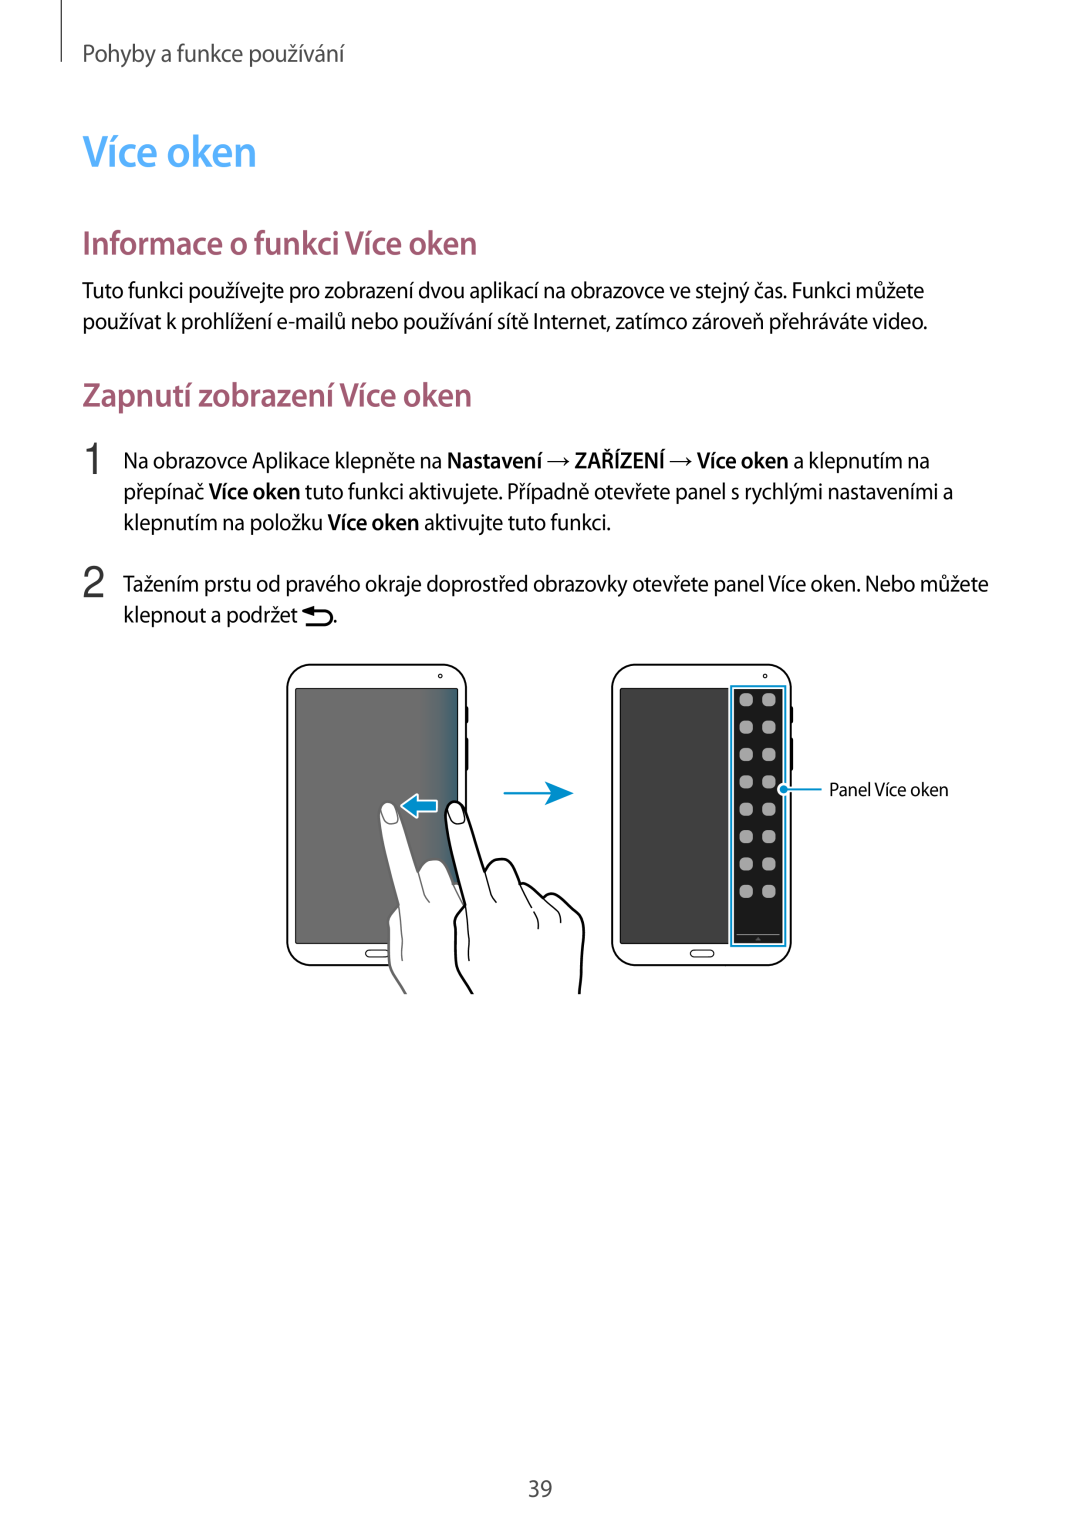 Samsung SM-T700NTSAXEZ manual Informace o funkci Více oken, Zapnutí zobrazení Více oken, Pohyby a funkce používání 